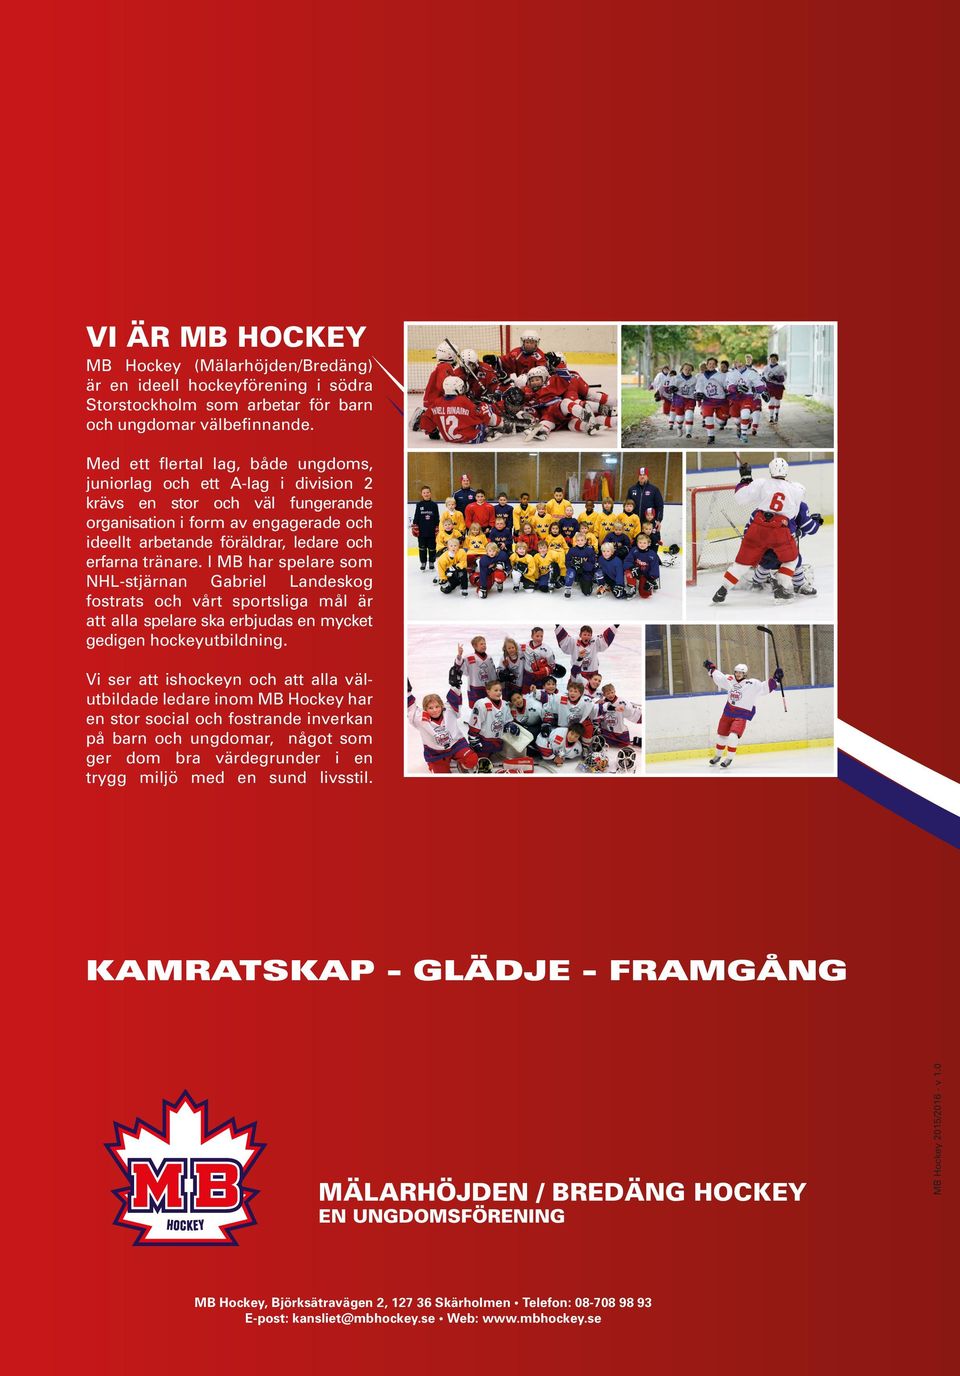 I MB har spelare som NHL-stjärnan Gabriel Landeskog fostrats och vårt sportsliga mål är att alla spelare ska erbjudas en mycket gedigen hockeyutbildning.